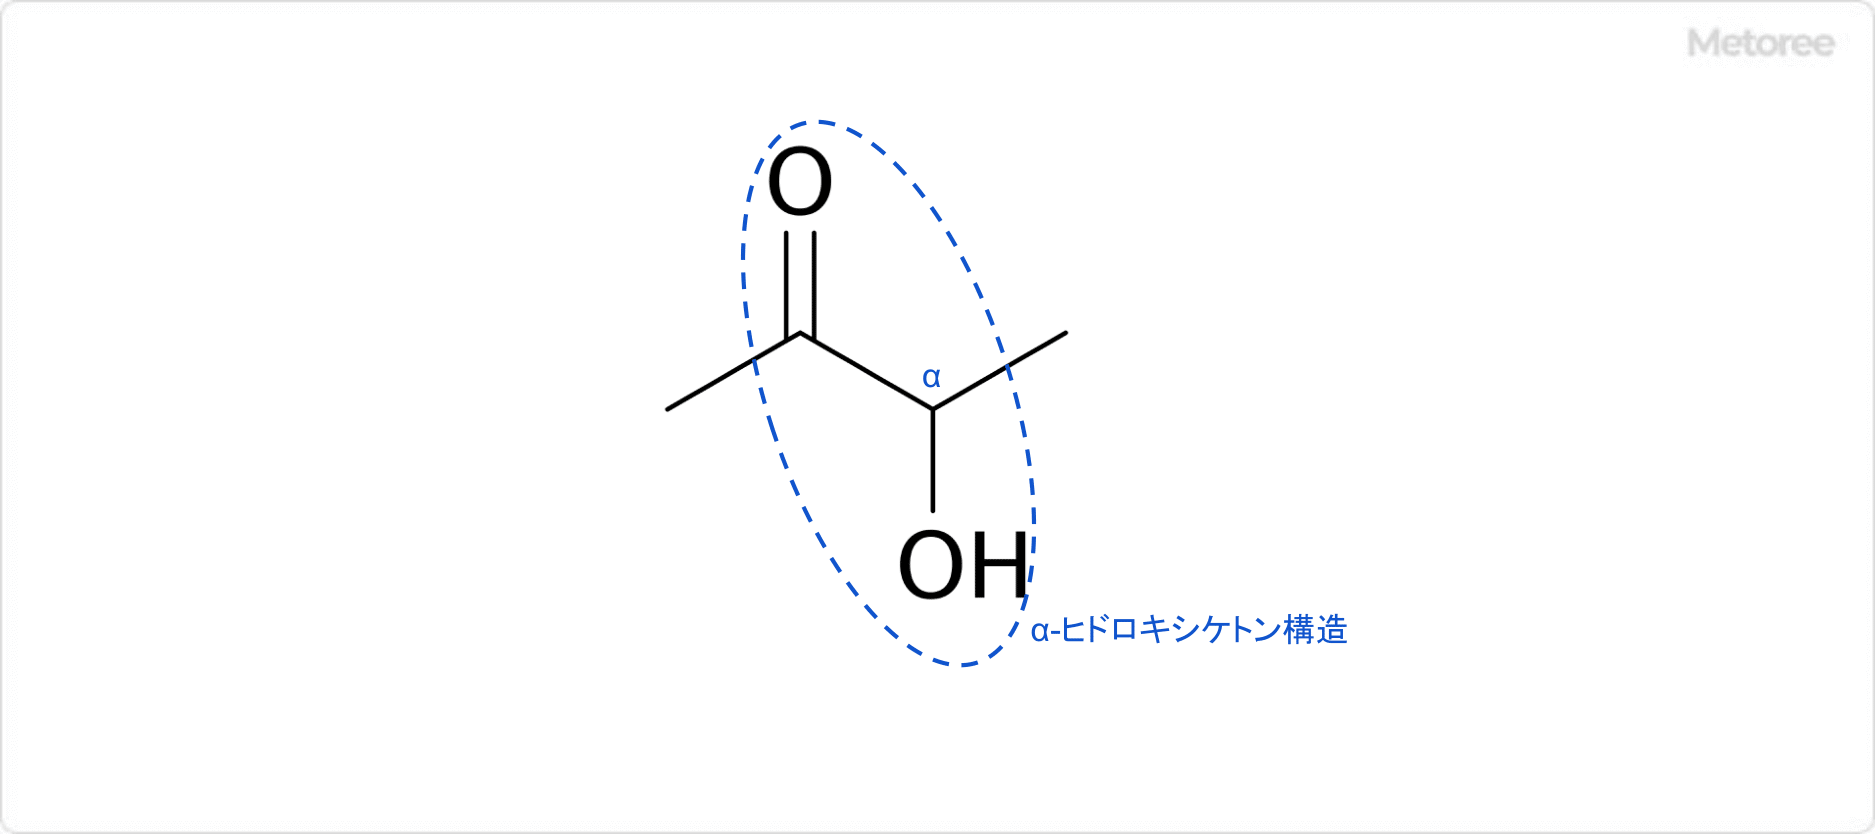 アセトインの分子内におけるα-ヒドロキシケトン構造